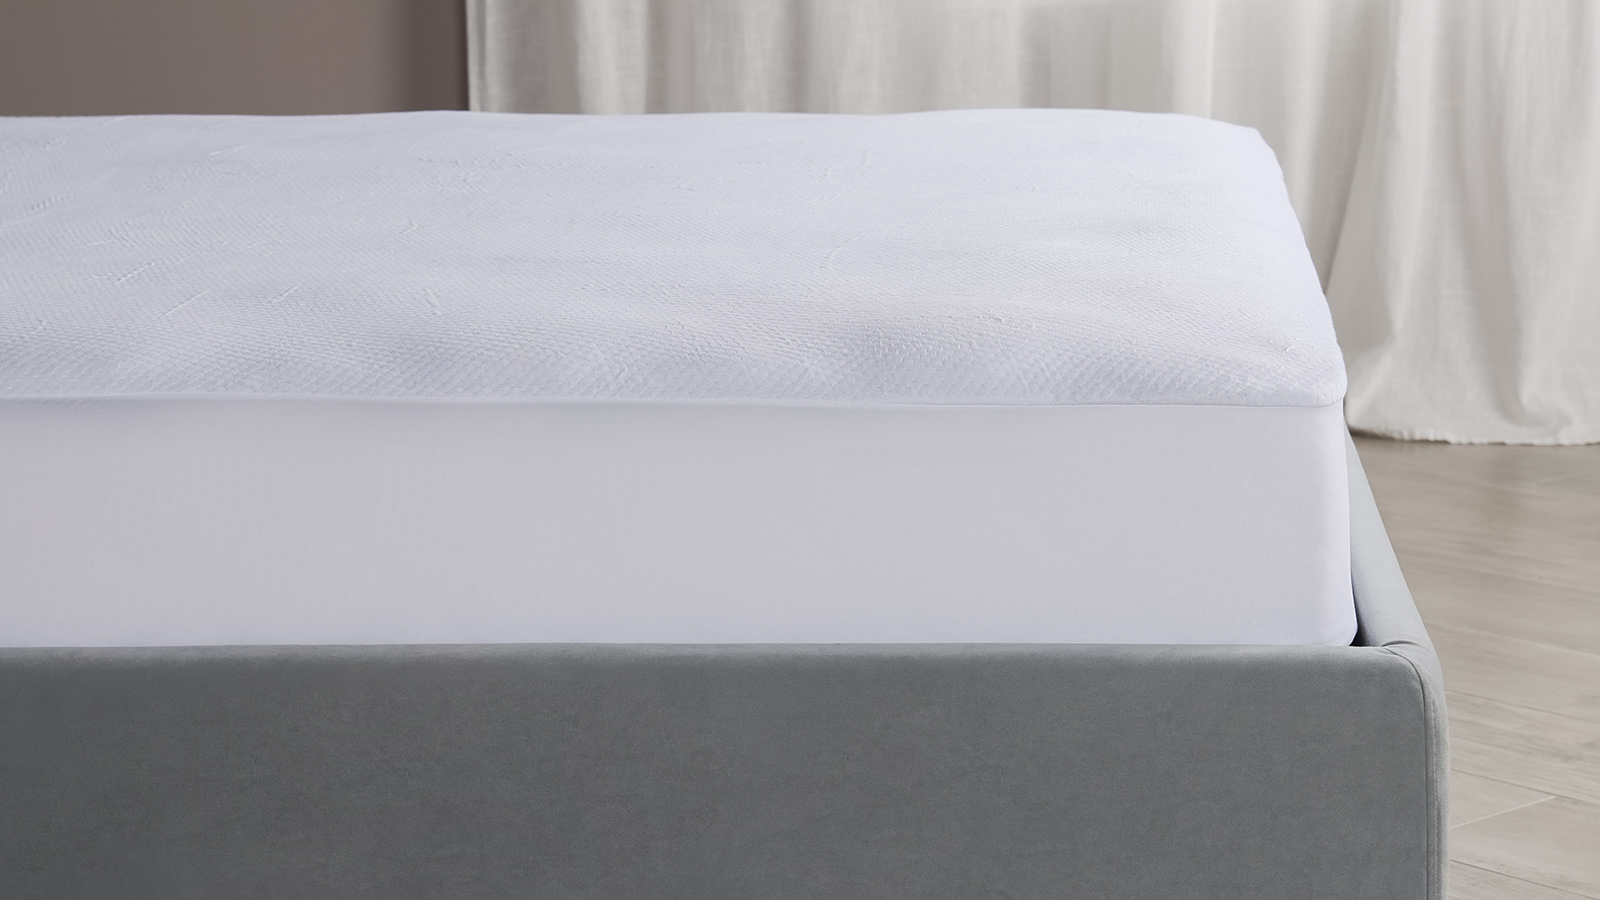 Чехол Protect-a-bed Signature novetly ткань чехол защищает термостойкий гладильный коврик швейная доска